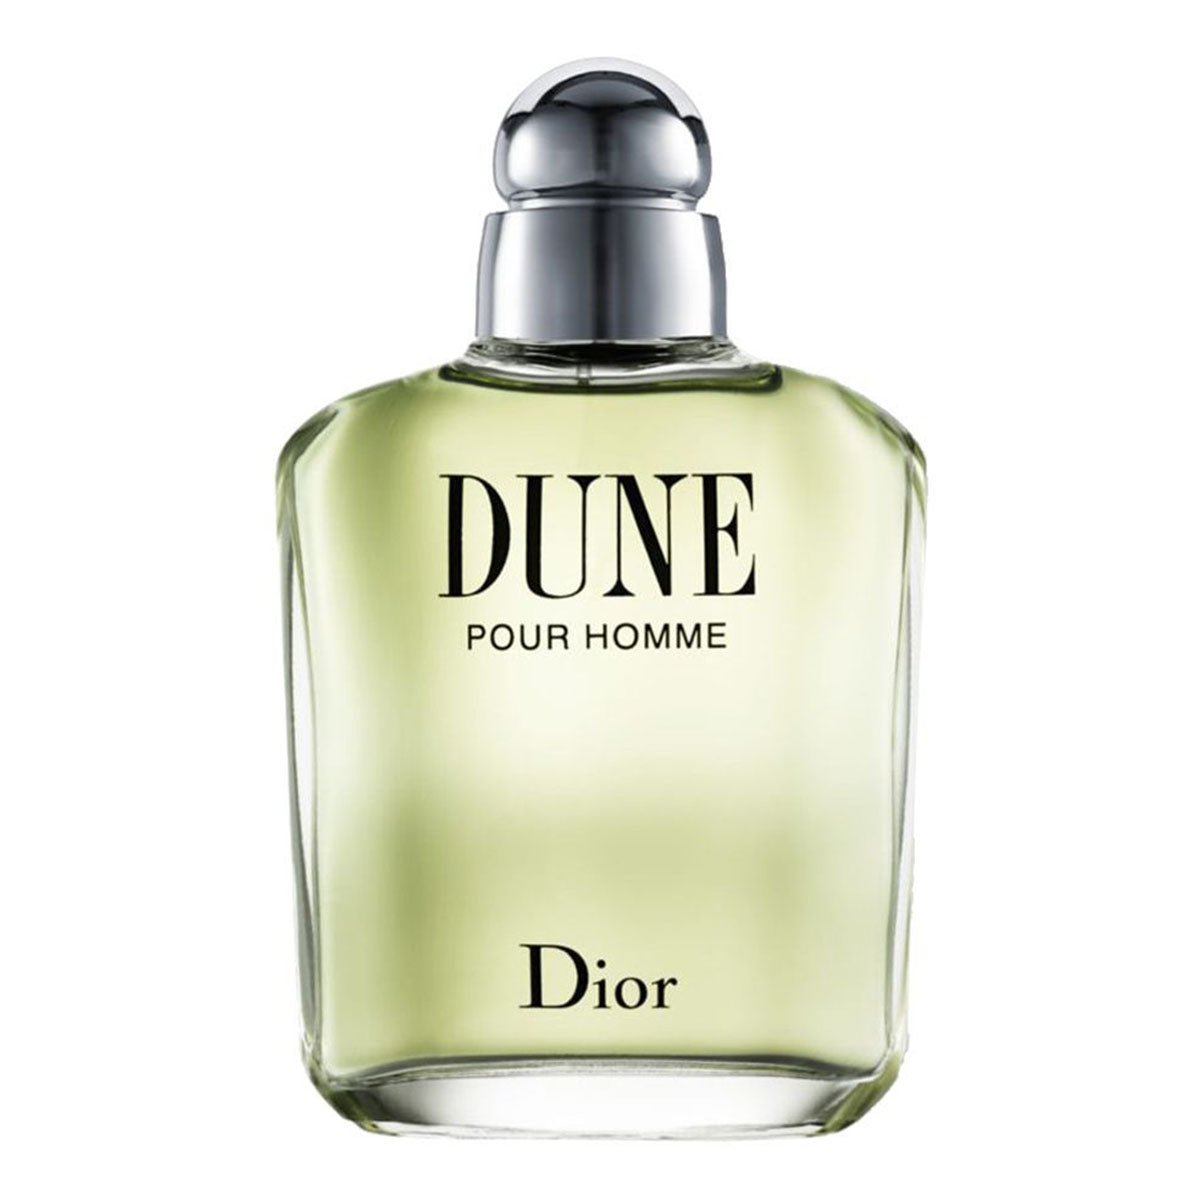 Christian Dior Dune Pour Homme For Men Edt Spray 100 ml-Perfume - AllurebeautypkChristian Dior Dune Pour Homme For Men Edt Spray 100 ml-Perfume